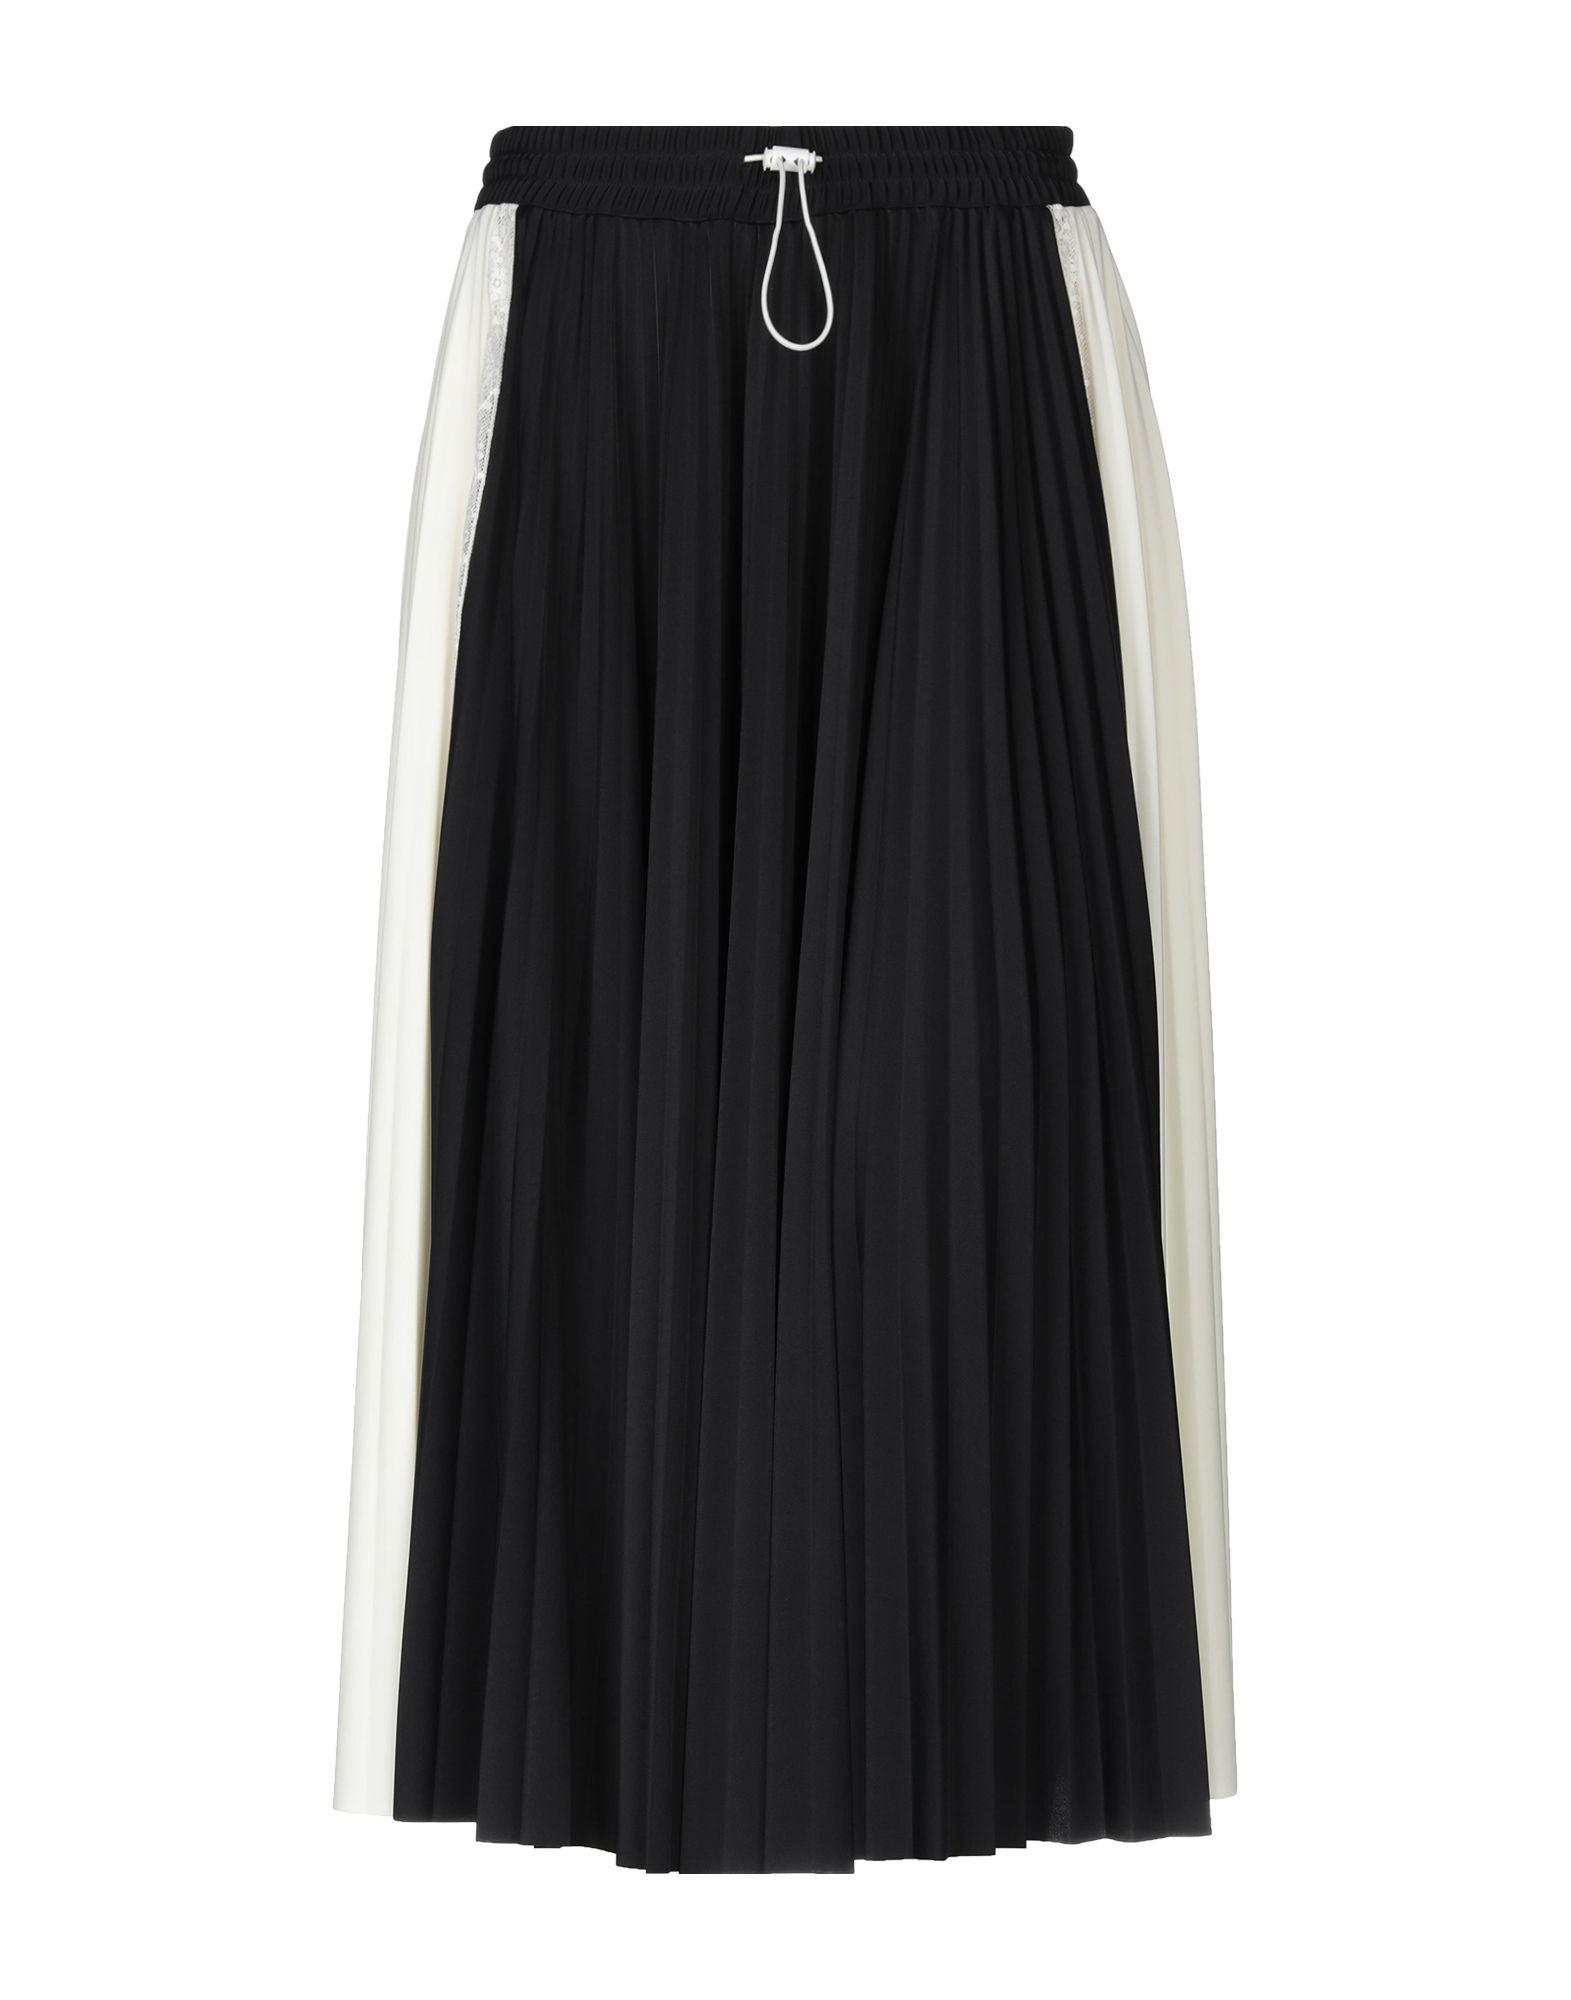 Valentino 3/4 Length Skirt in Black - Lyst